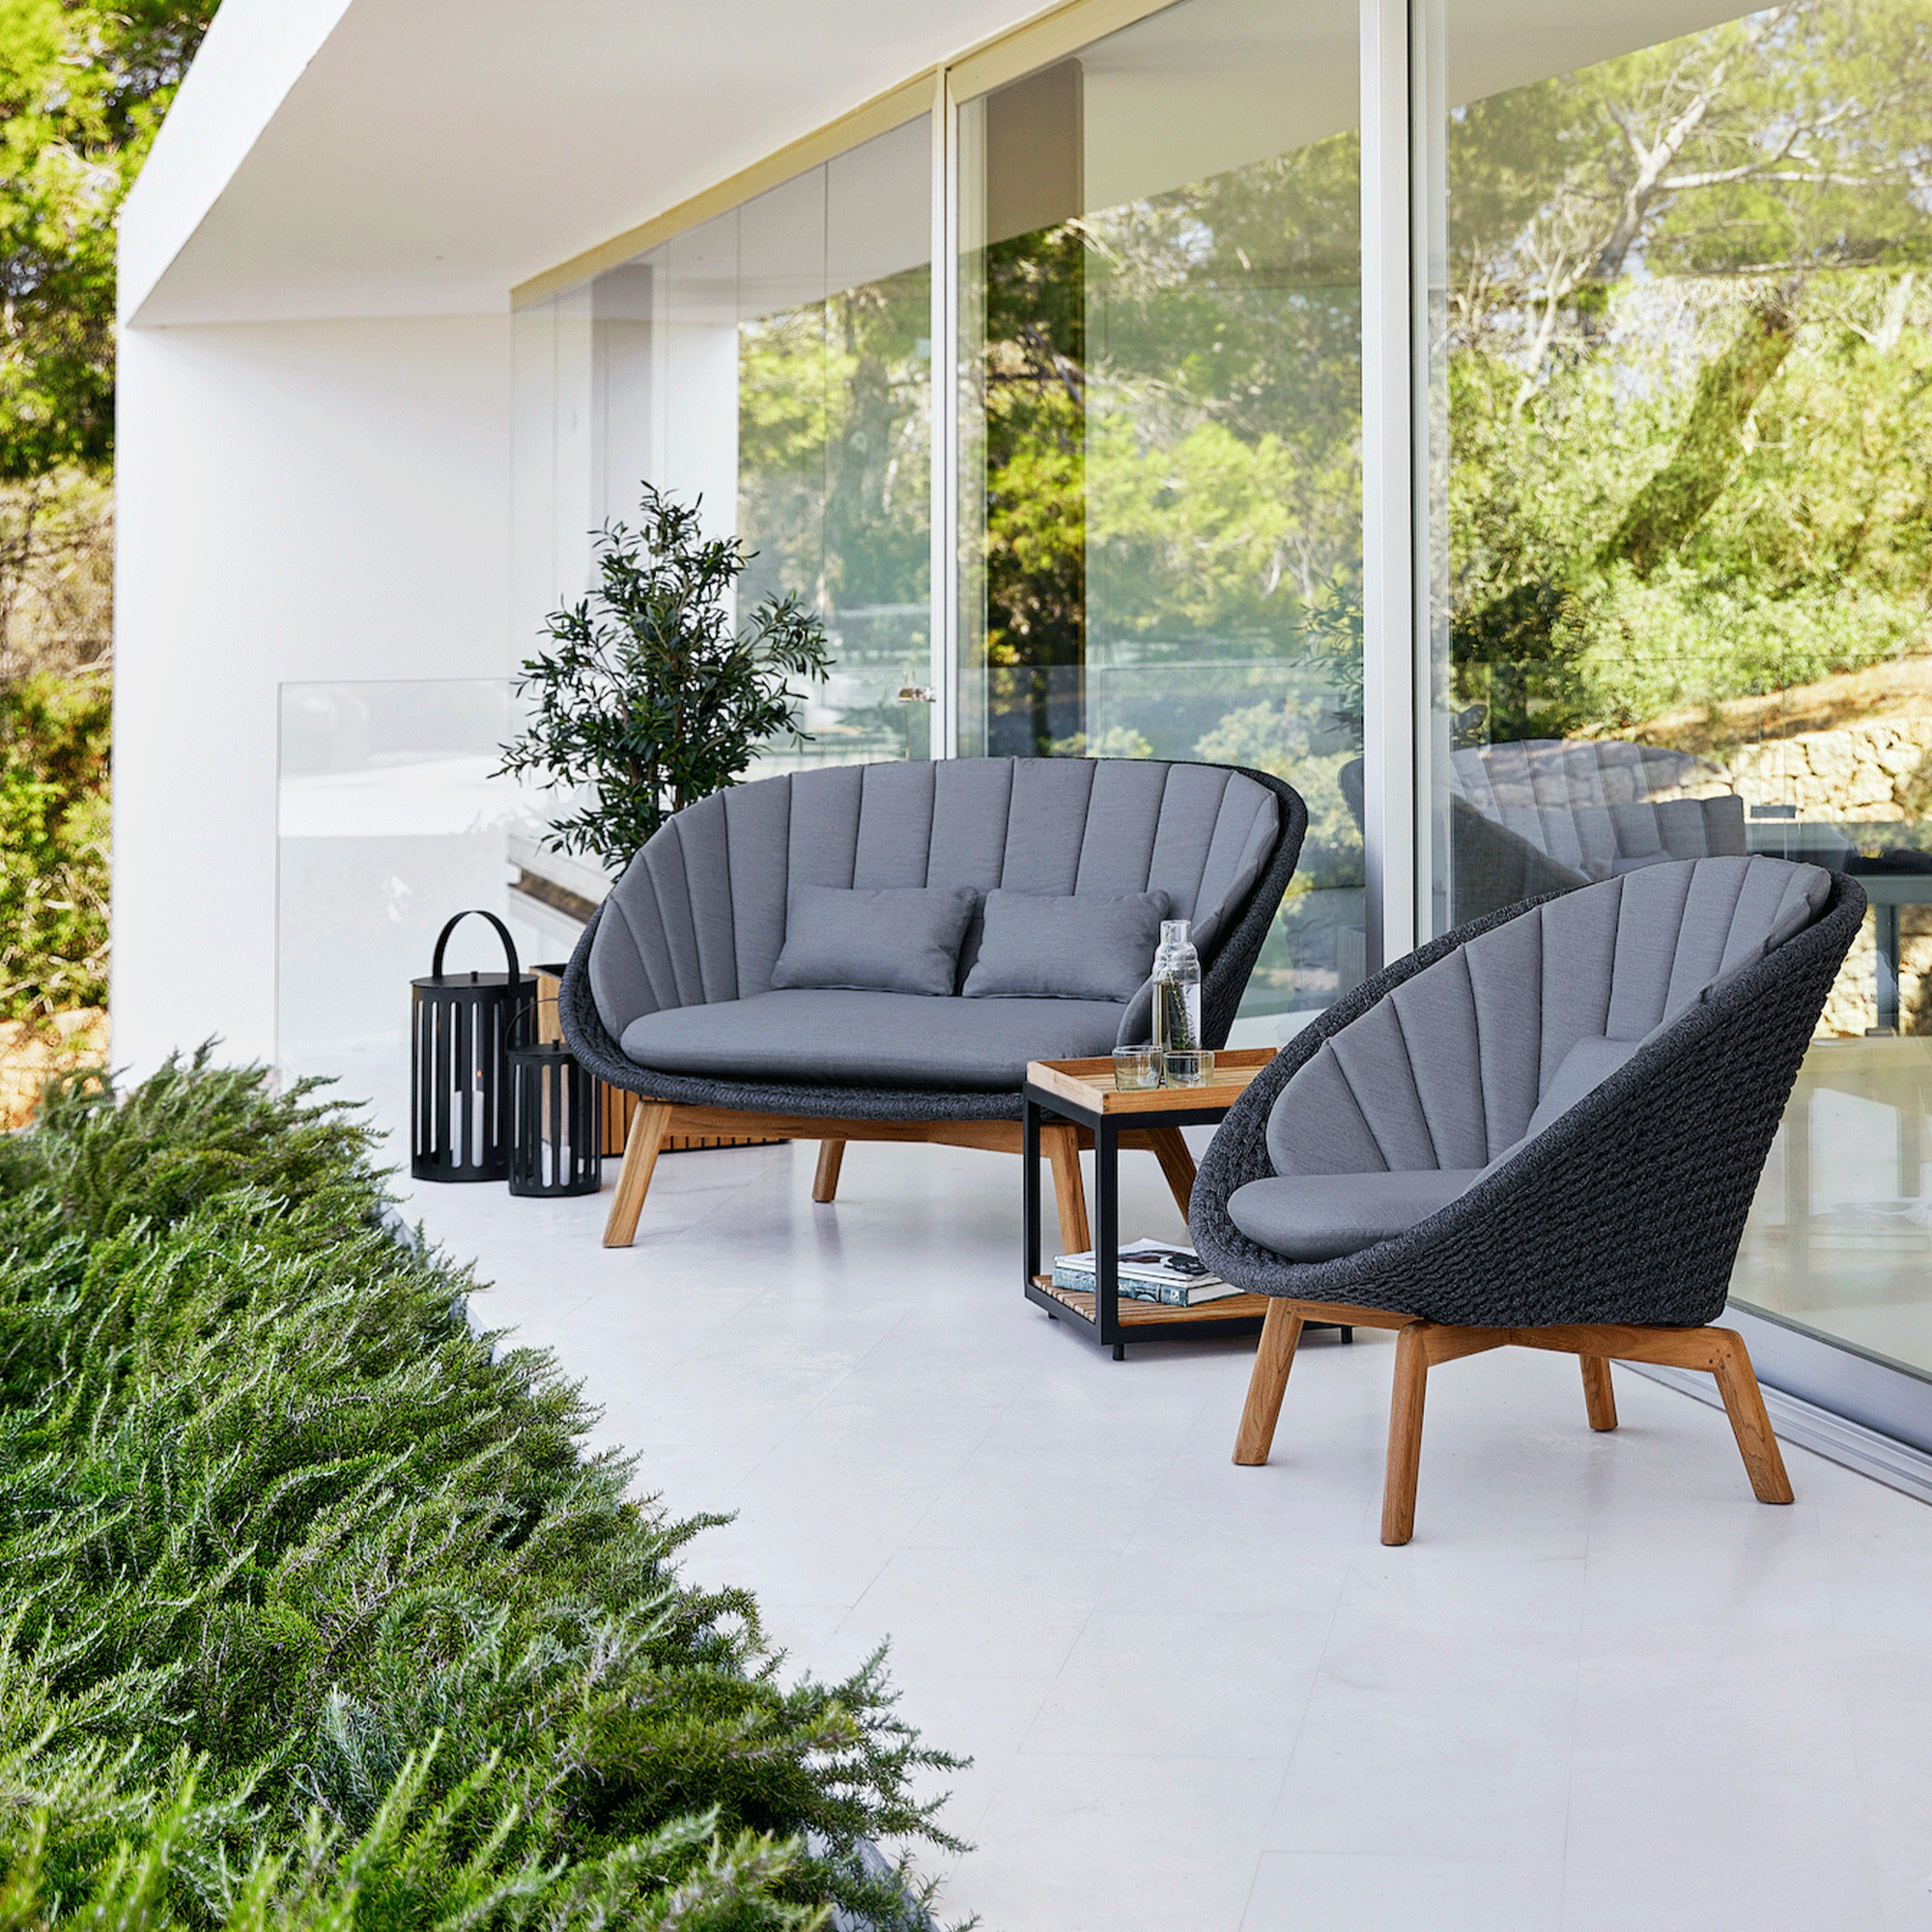 Von Cane-Line wird das exklusive Sofa mit edlem Geflecht und gemütlichen Auflagen in Grau angeboten, das ein modernes nordisches Design aufweist. Der Garten erfährt eine große Bereicherung mit diesem hochwertigen Gartenmöbel von Cane-Line in charmanter abgerundeter Form.